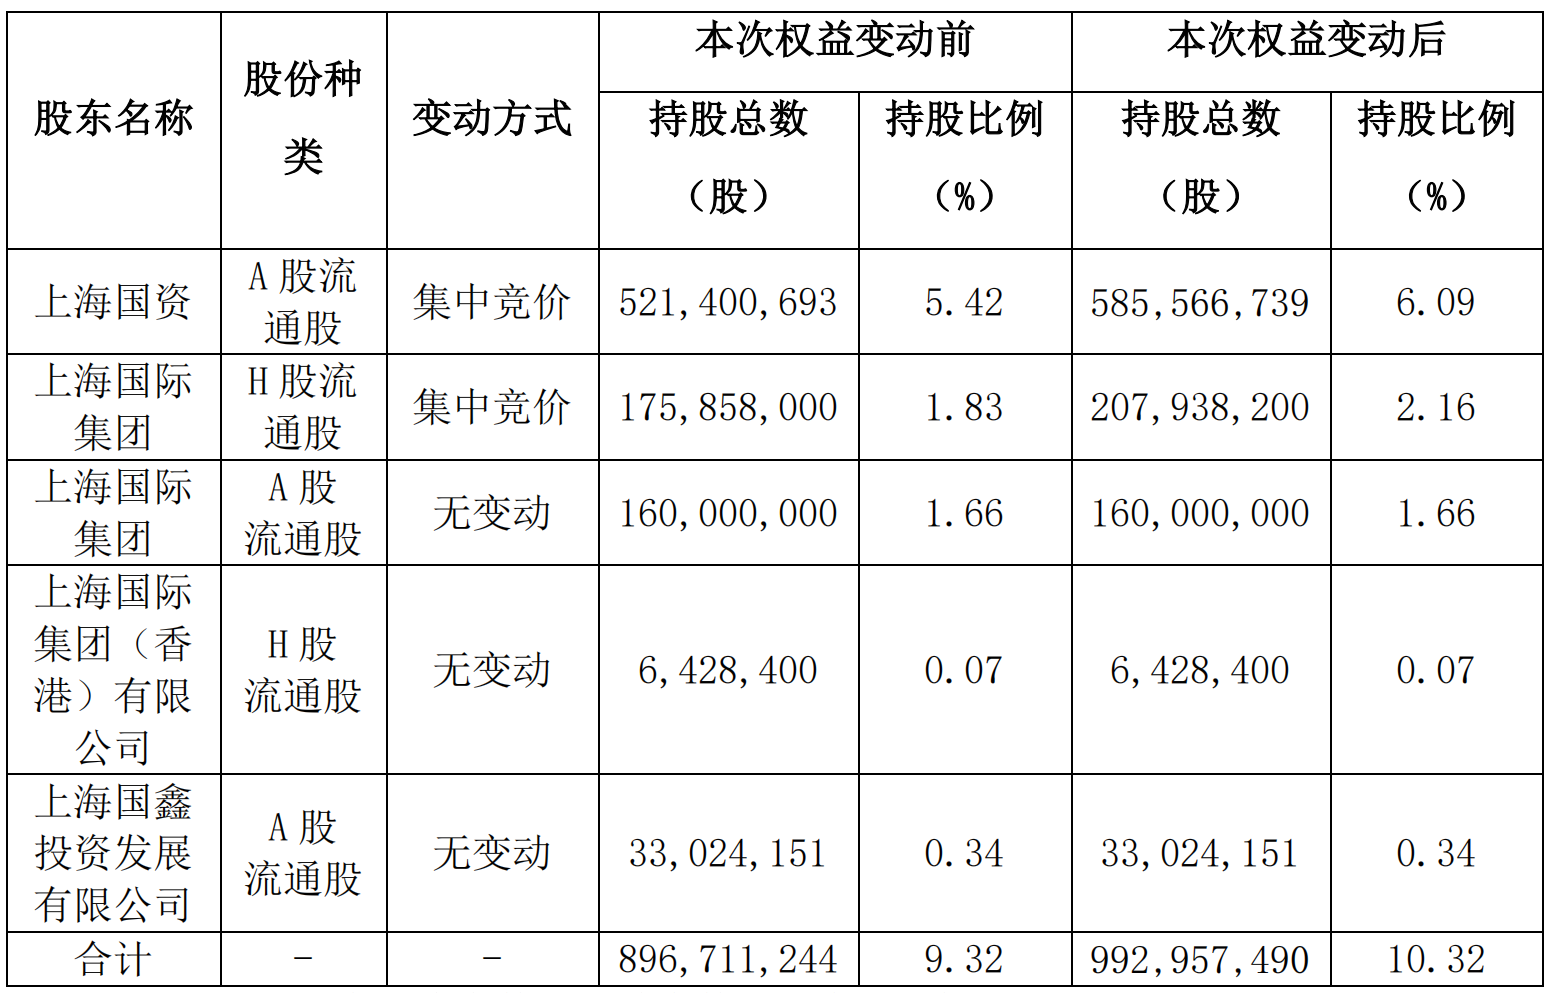 上海国资增持超1% 中国太保发布股东增持公告